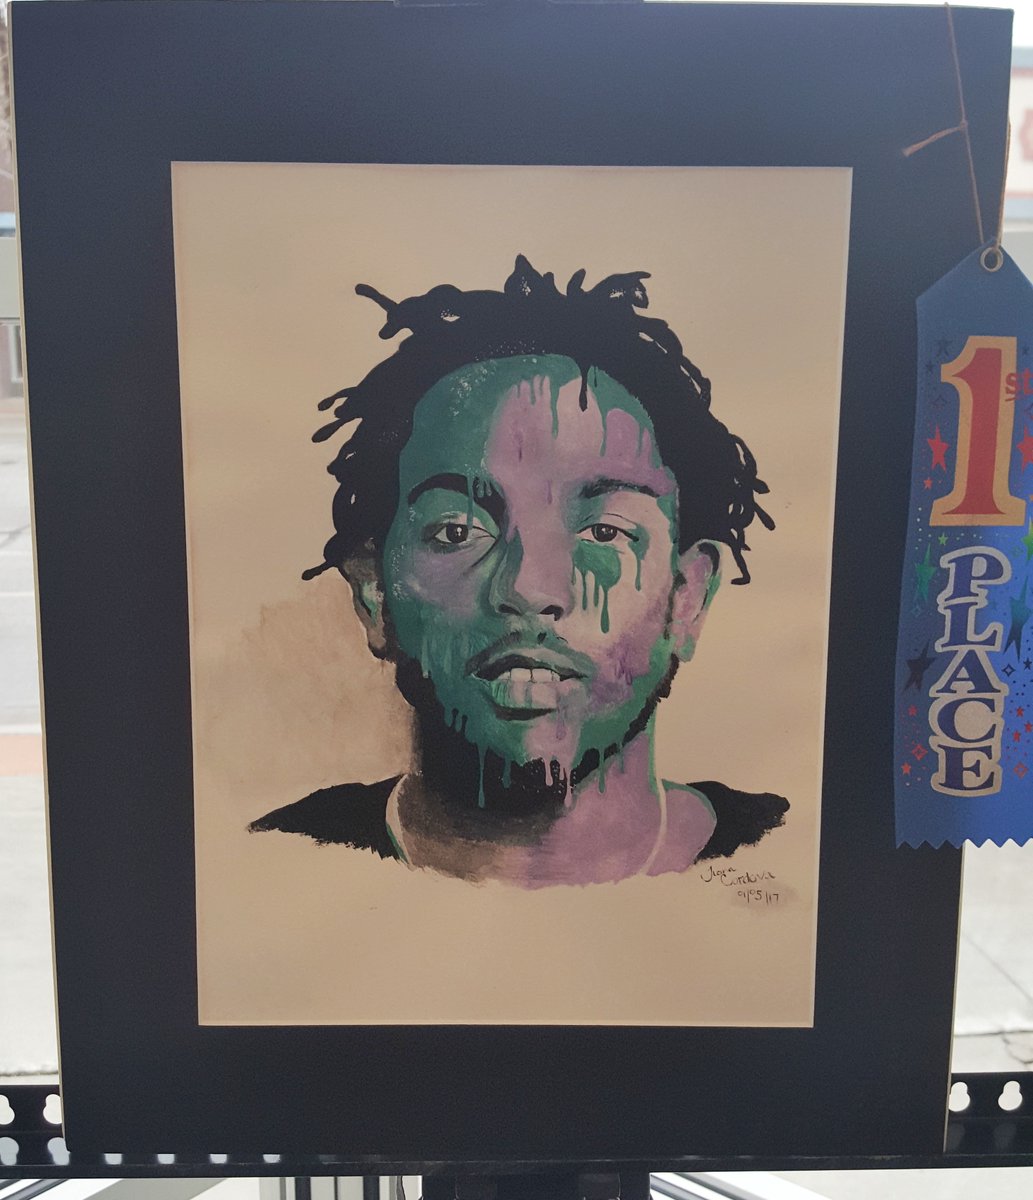 Kendrick Lamar Painting to Hang in U.S. Capitol   Read More: Kendrick Lamar Painting to Hang in U.S. Capitol